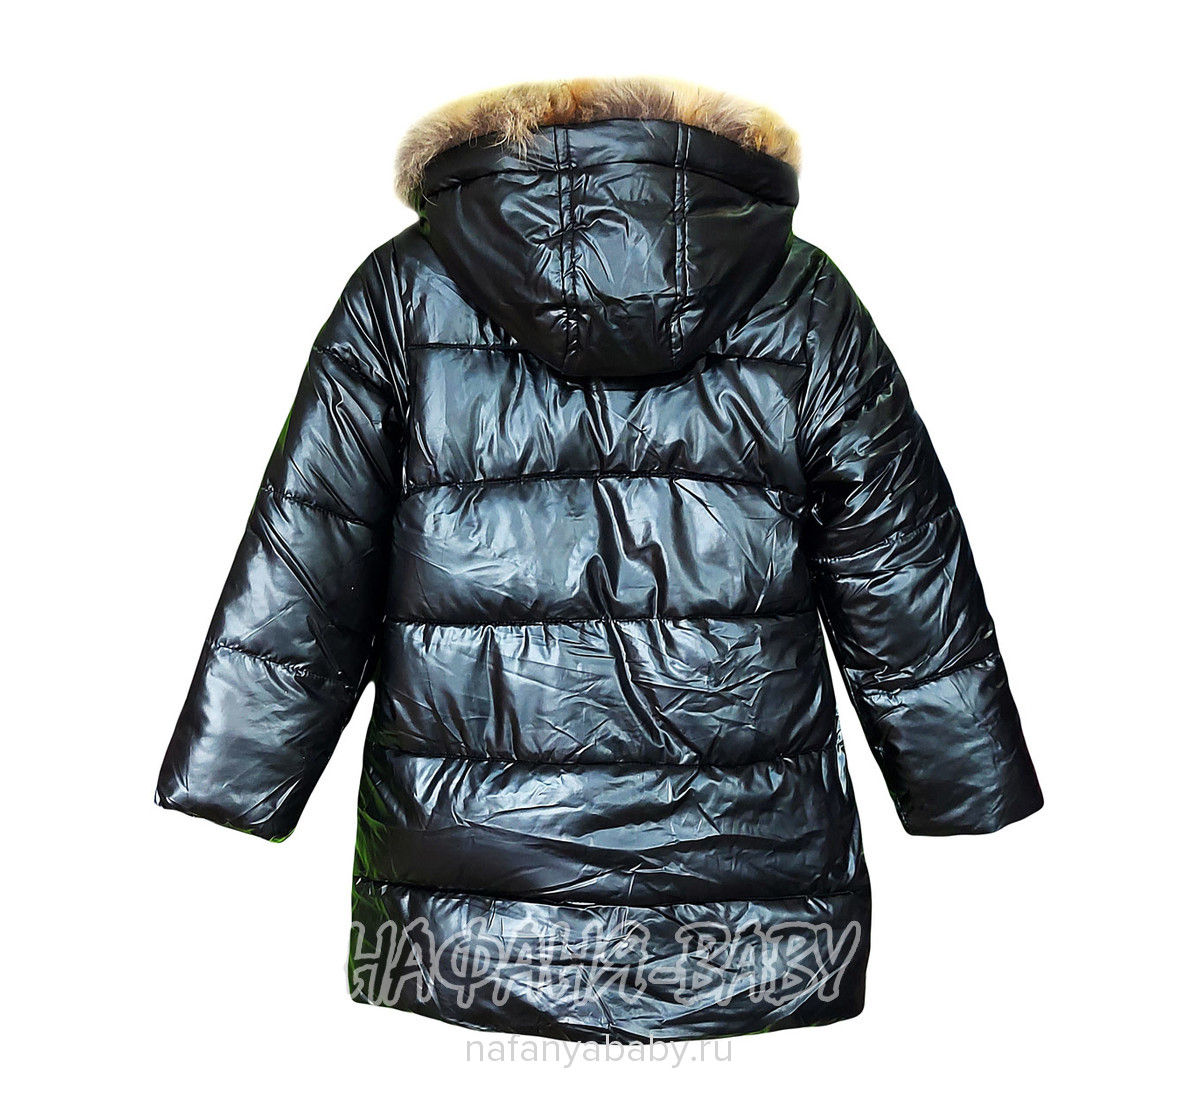 Зимняя удлиненная куртка  YIKAI арт: 625, 1-4 года, 5-9 лет, цвет черный, оптом Китай (Пекин)